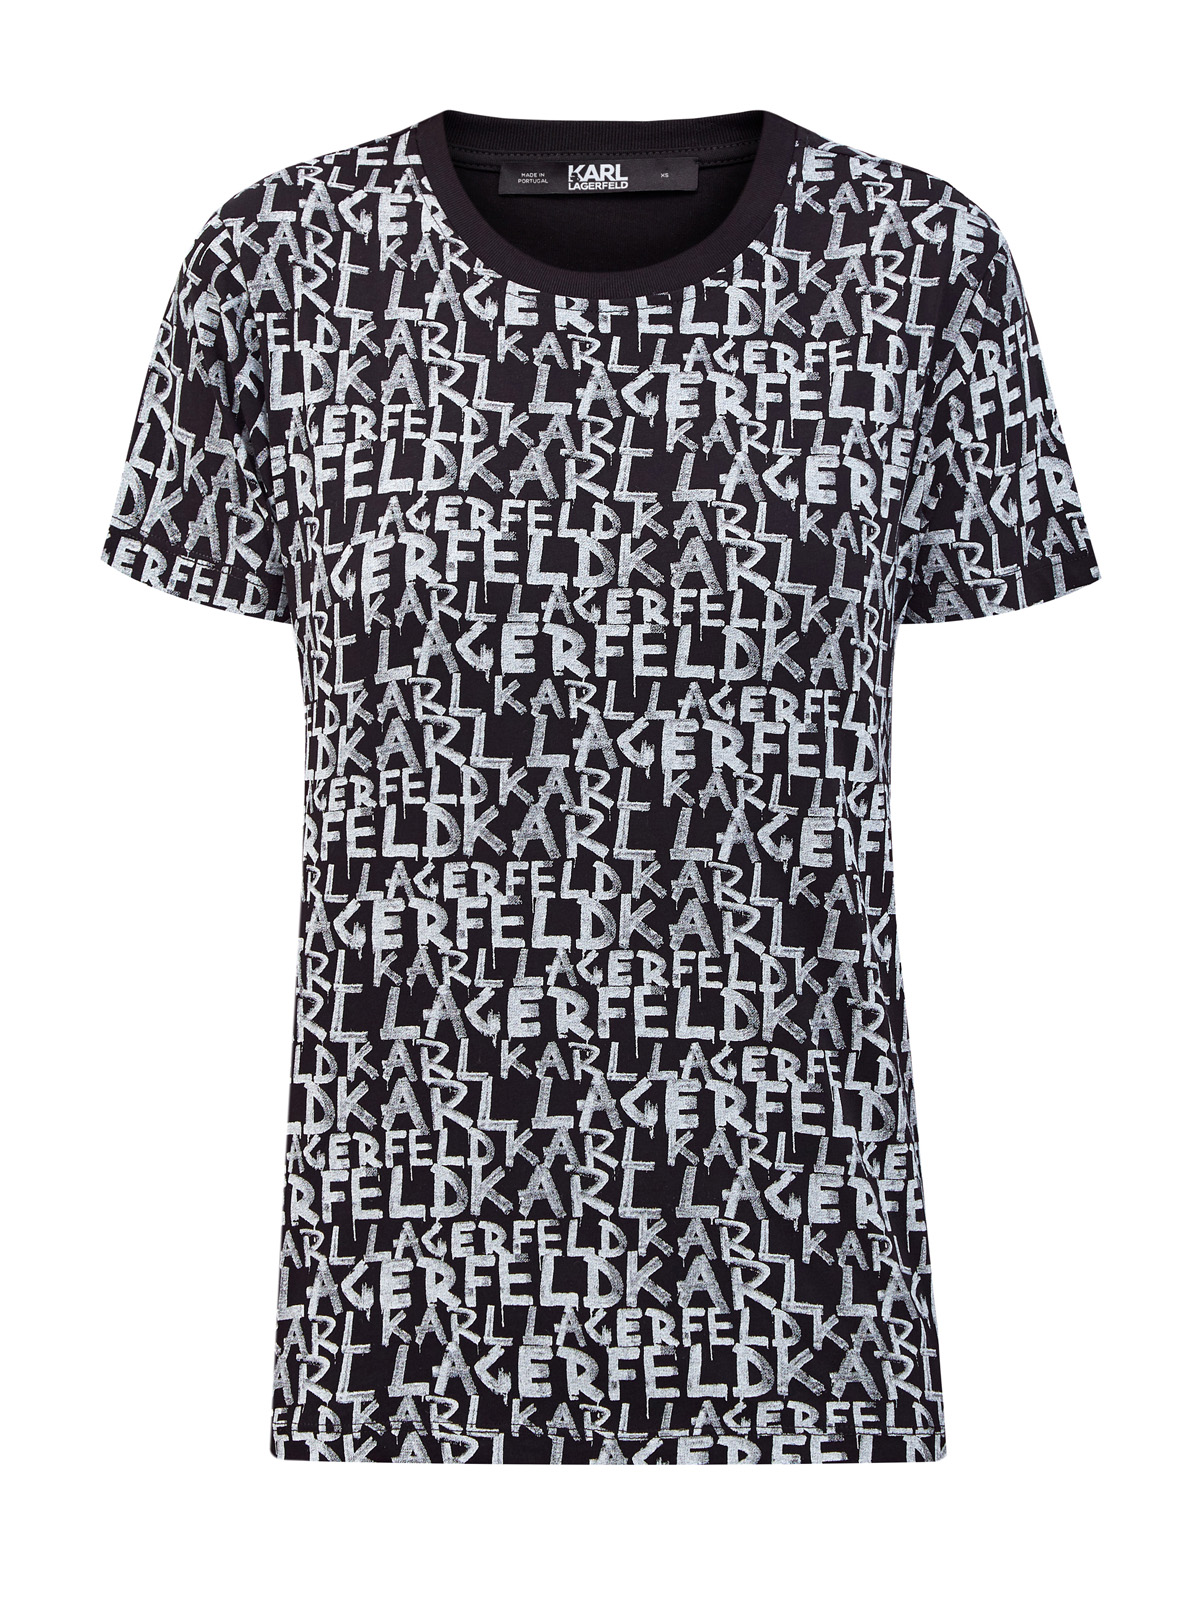 Хлопковая футболка с контрастным принтом в стиле леттеринг KARL LAGERFELD, цвет черный, размер XS;S;M;L - фото 1